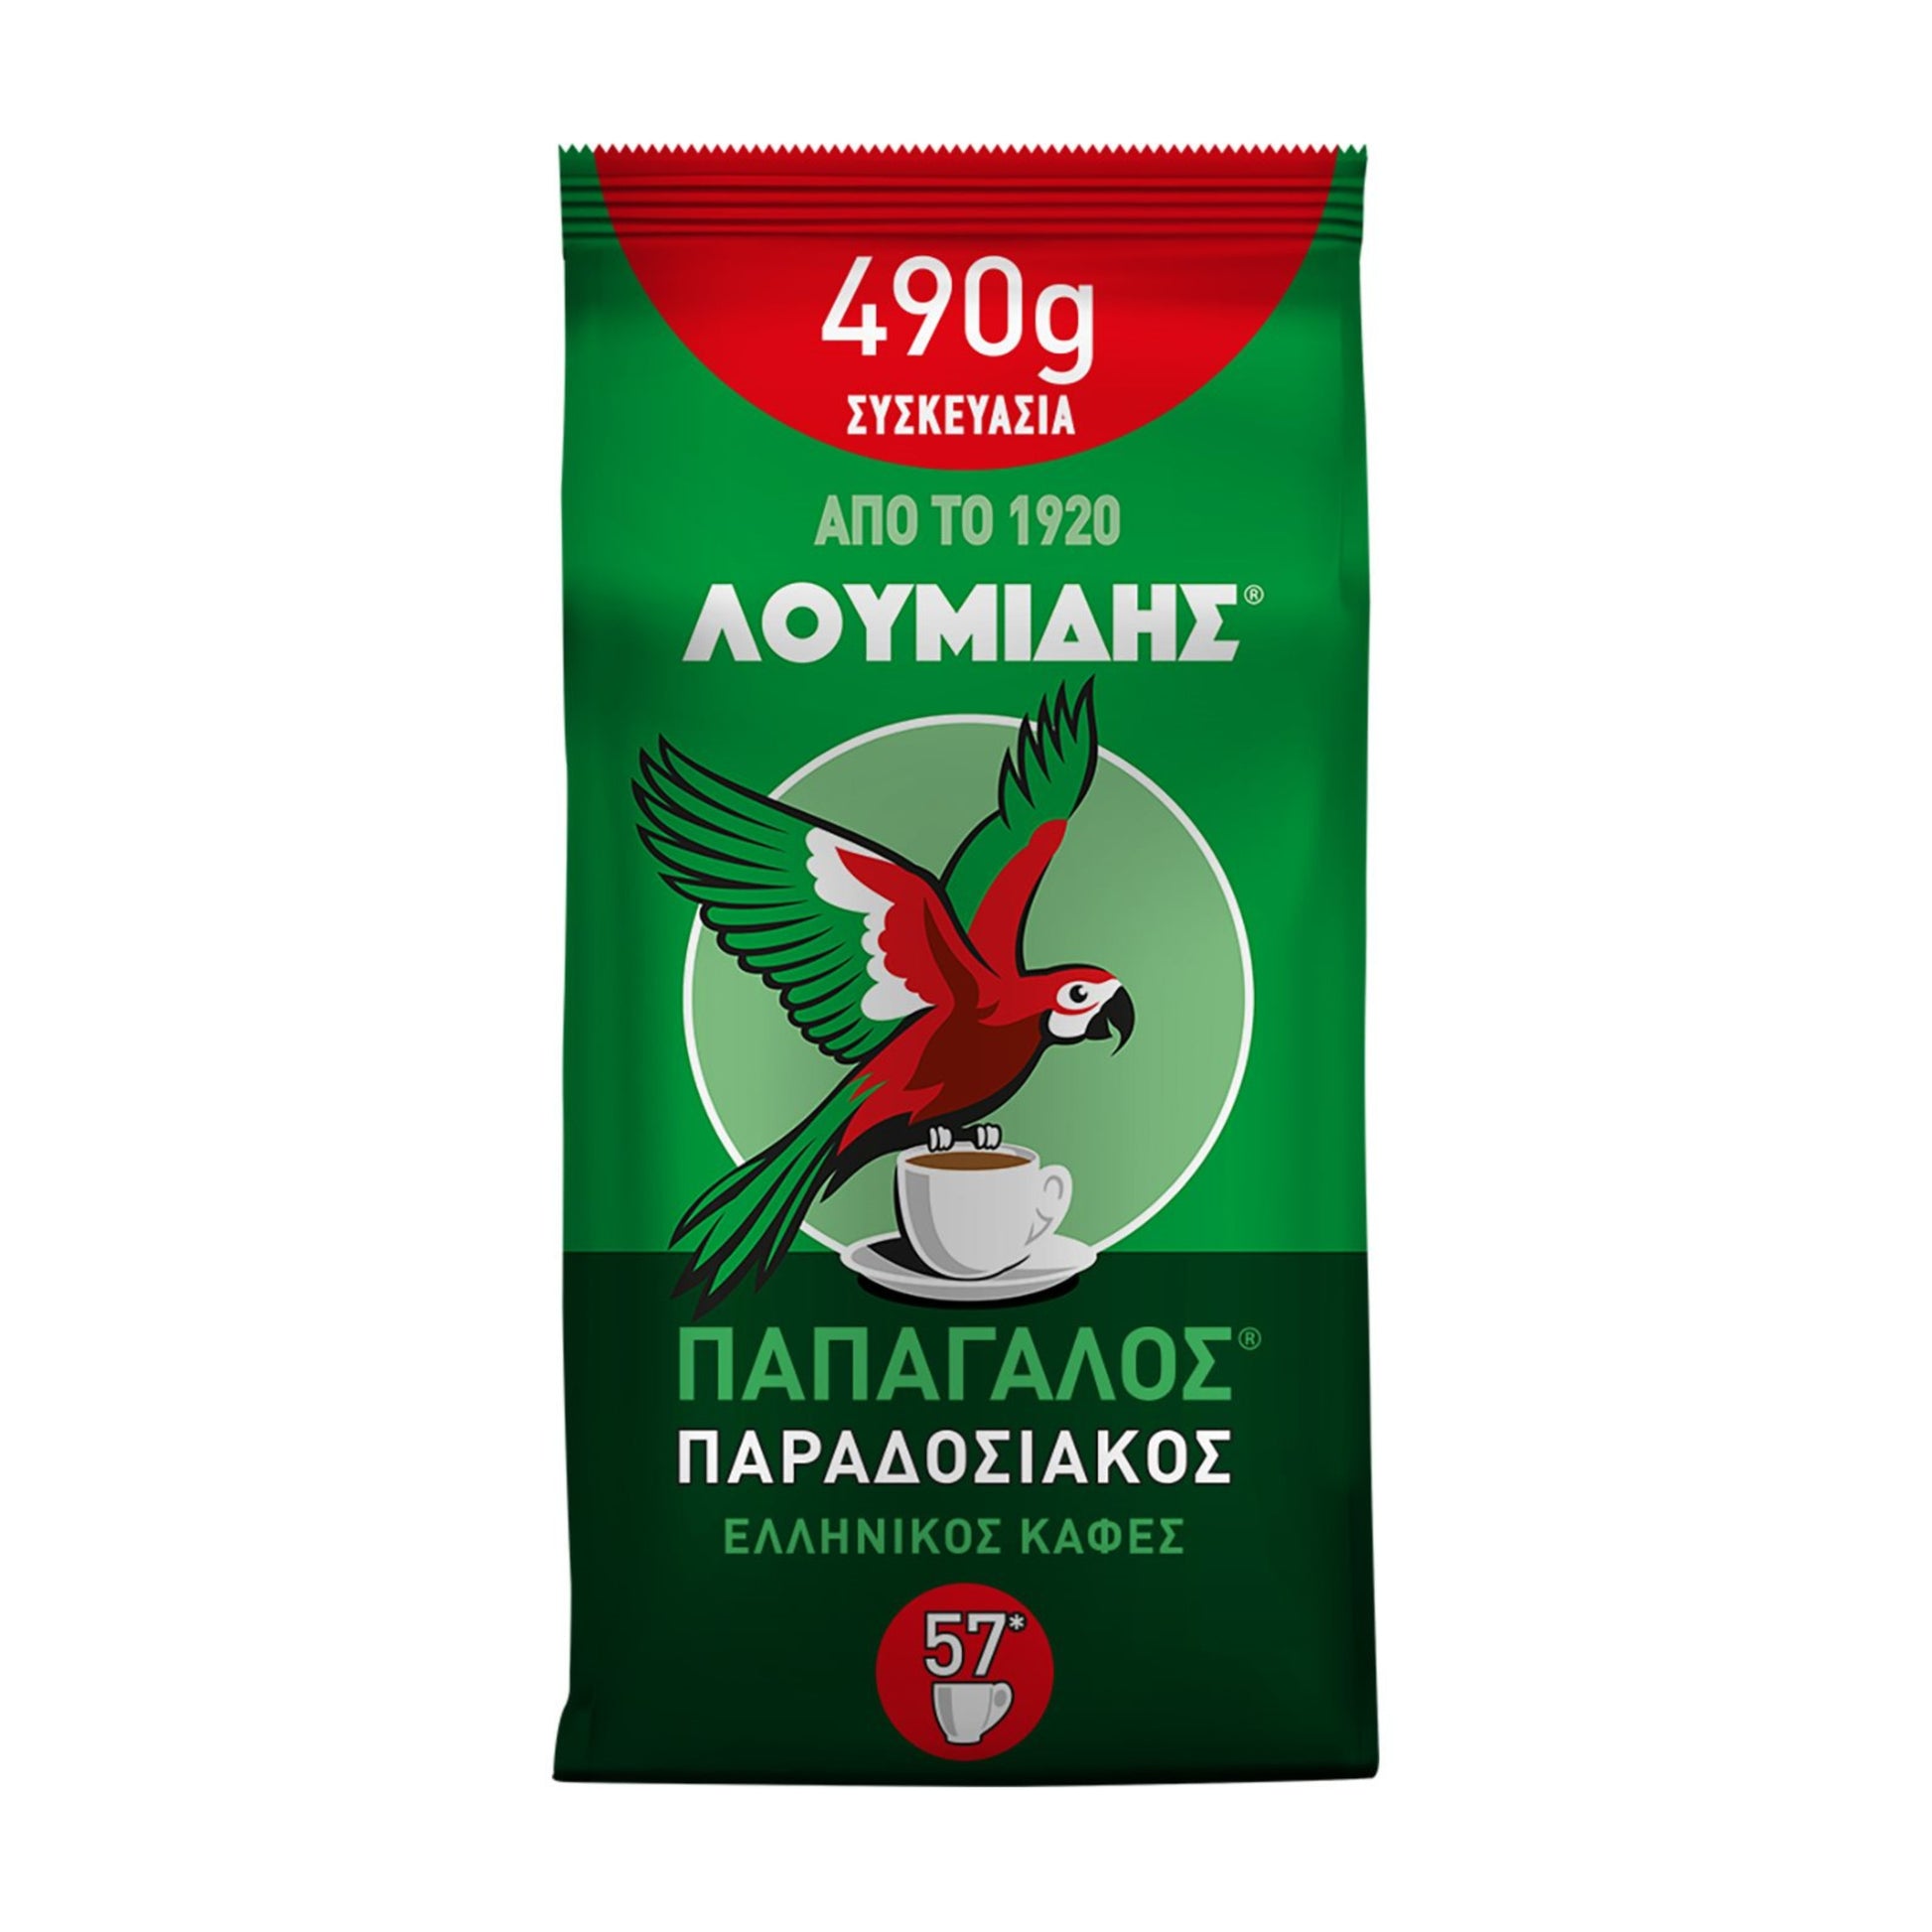 griechische-lebensmittel-griechische-produkte-griechischer-traditioneller-gemahlener-kaffee-490g-loumidis